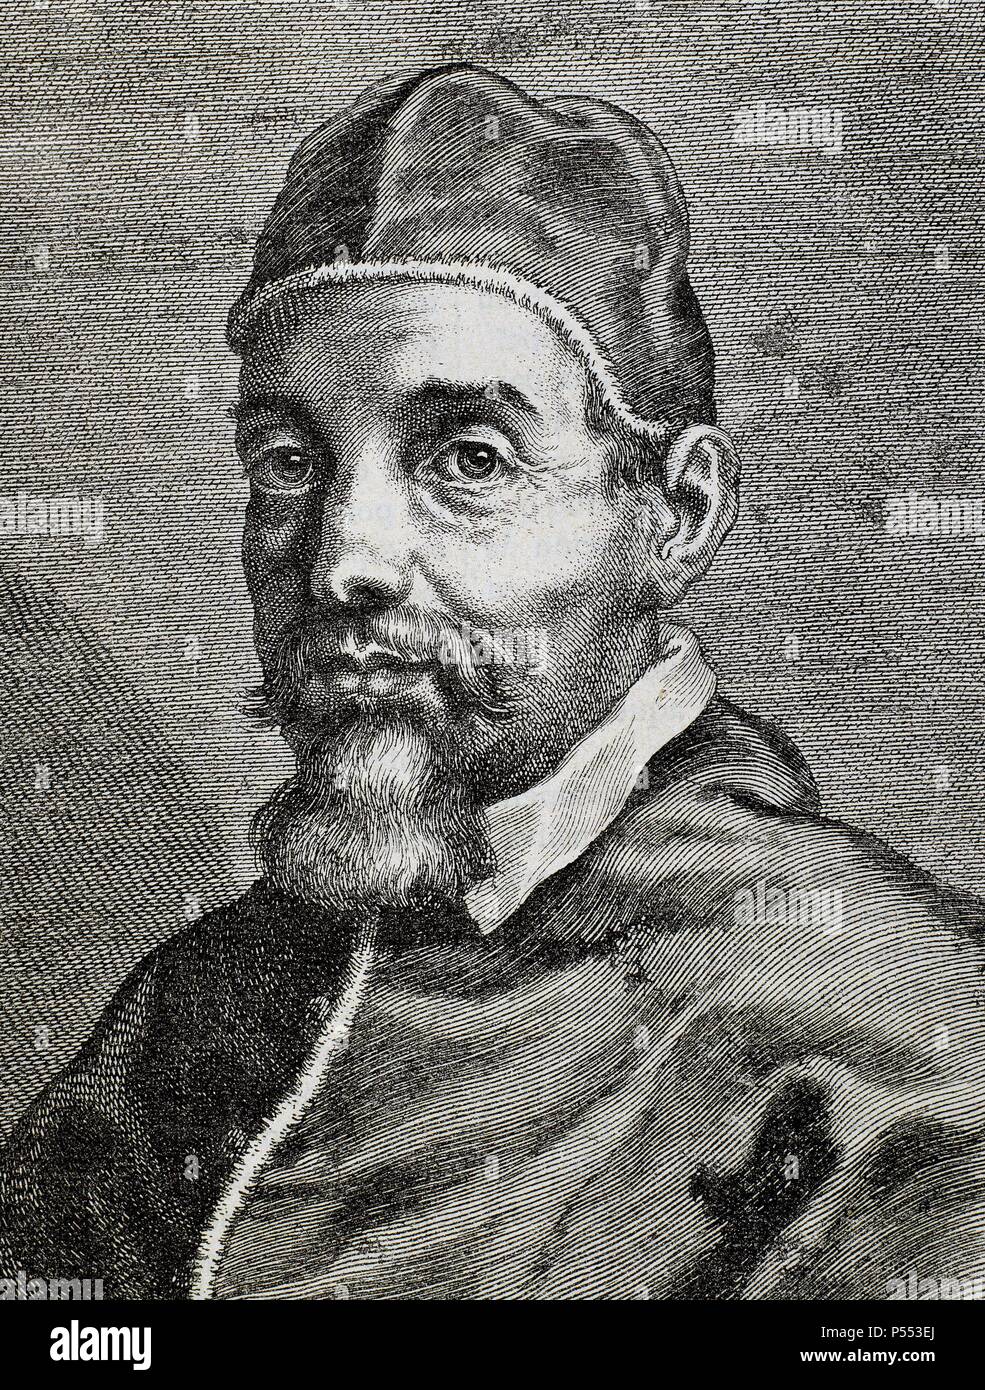 URBANO VIII (Florencia, 1568-Roma, 1644). Papa italiano, de nombre MAFFEO VICENTE BARBERINI fue elegido en 1623. Durante la guerra de los Treinta Años mantuvo una política francófila. Grabado. Stock Photo